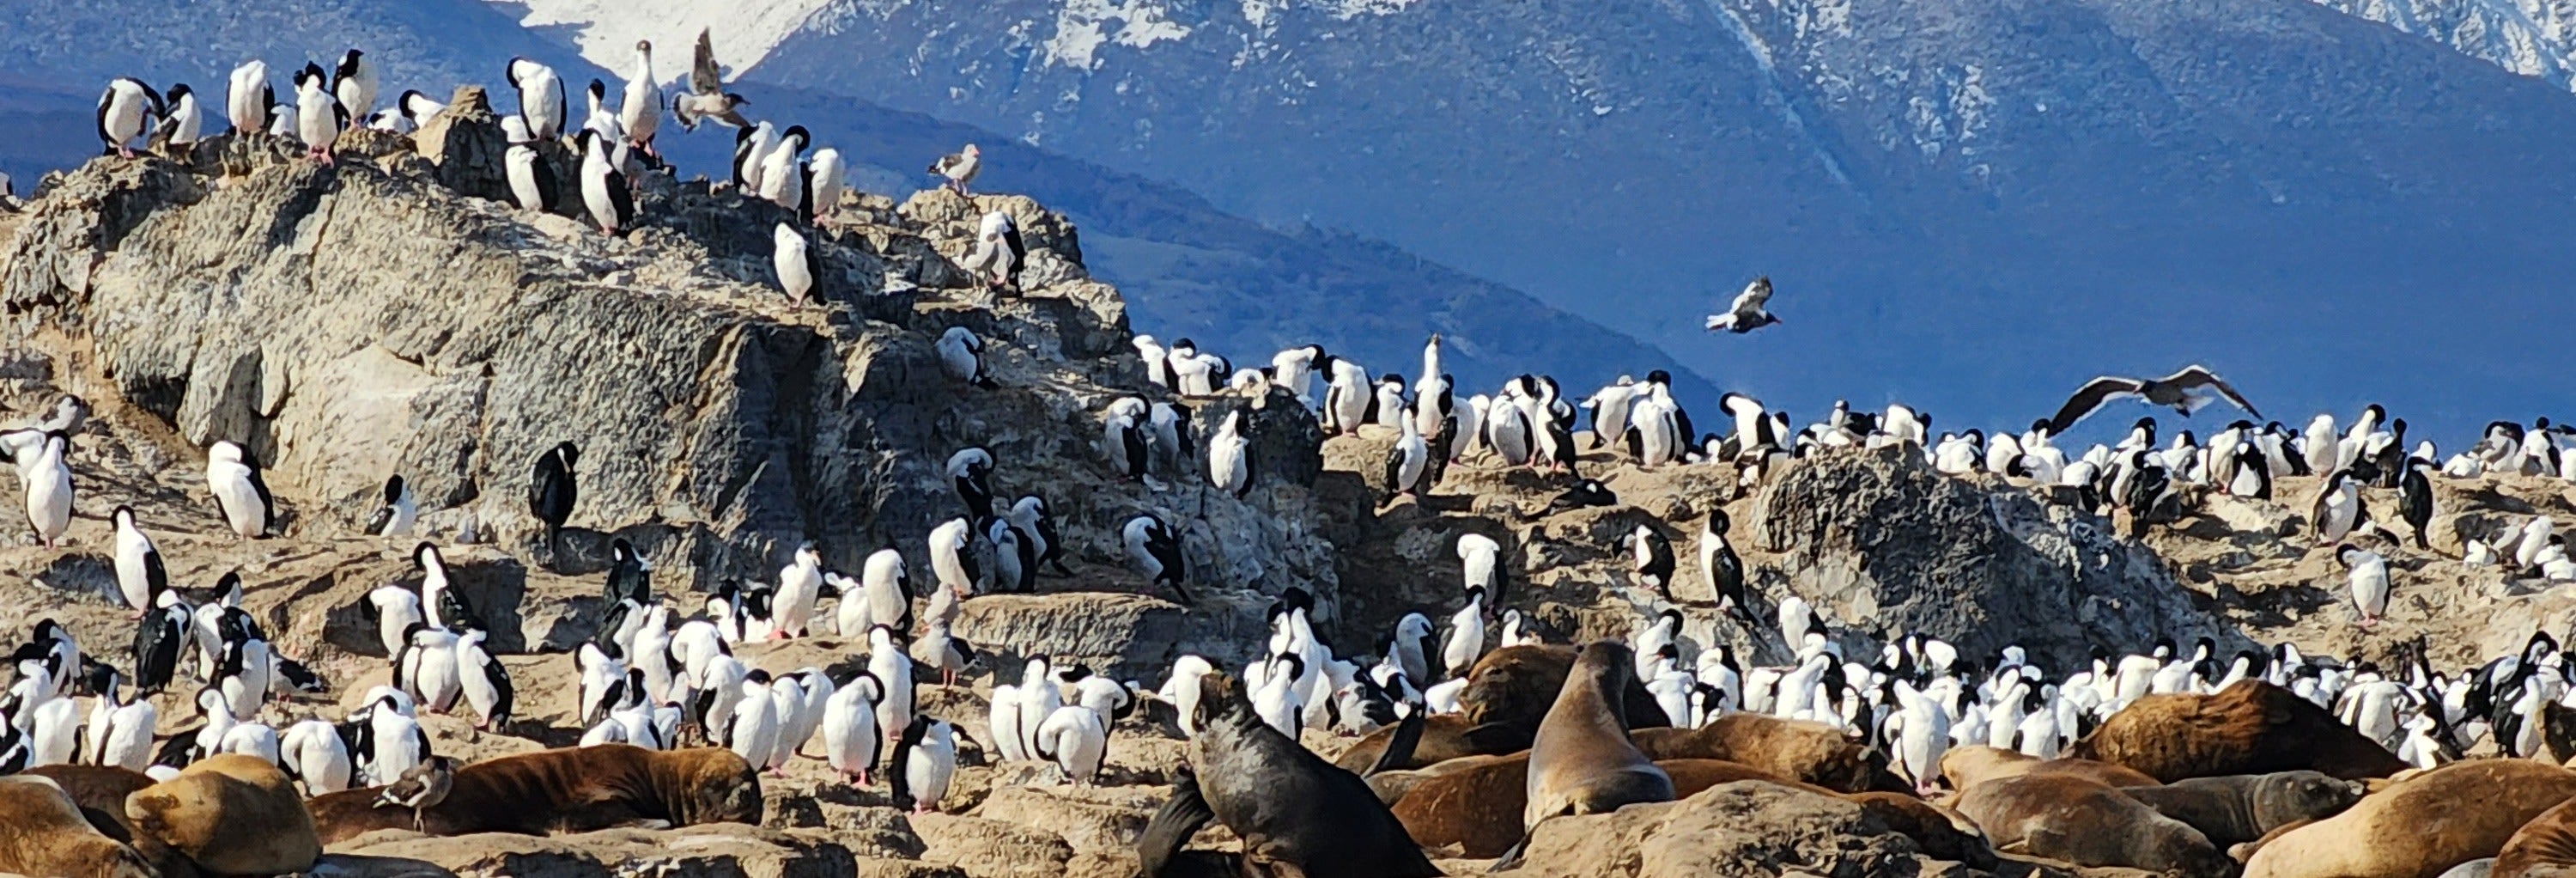 Colônia de pinguins na Ilha Martillo + Passeio de barco pelo canal Beagle